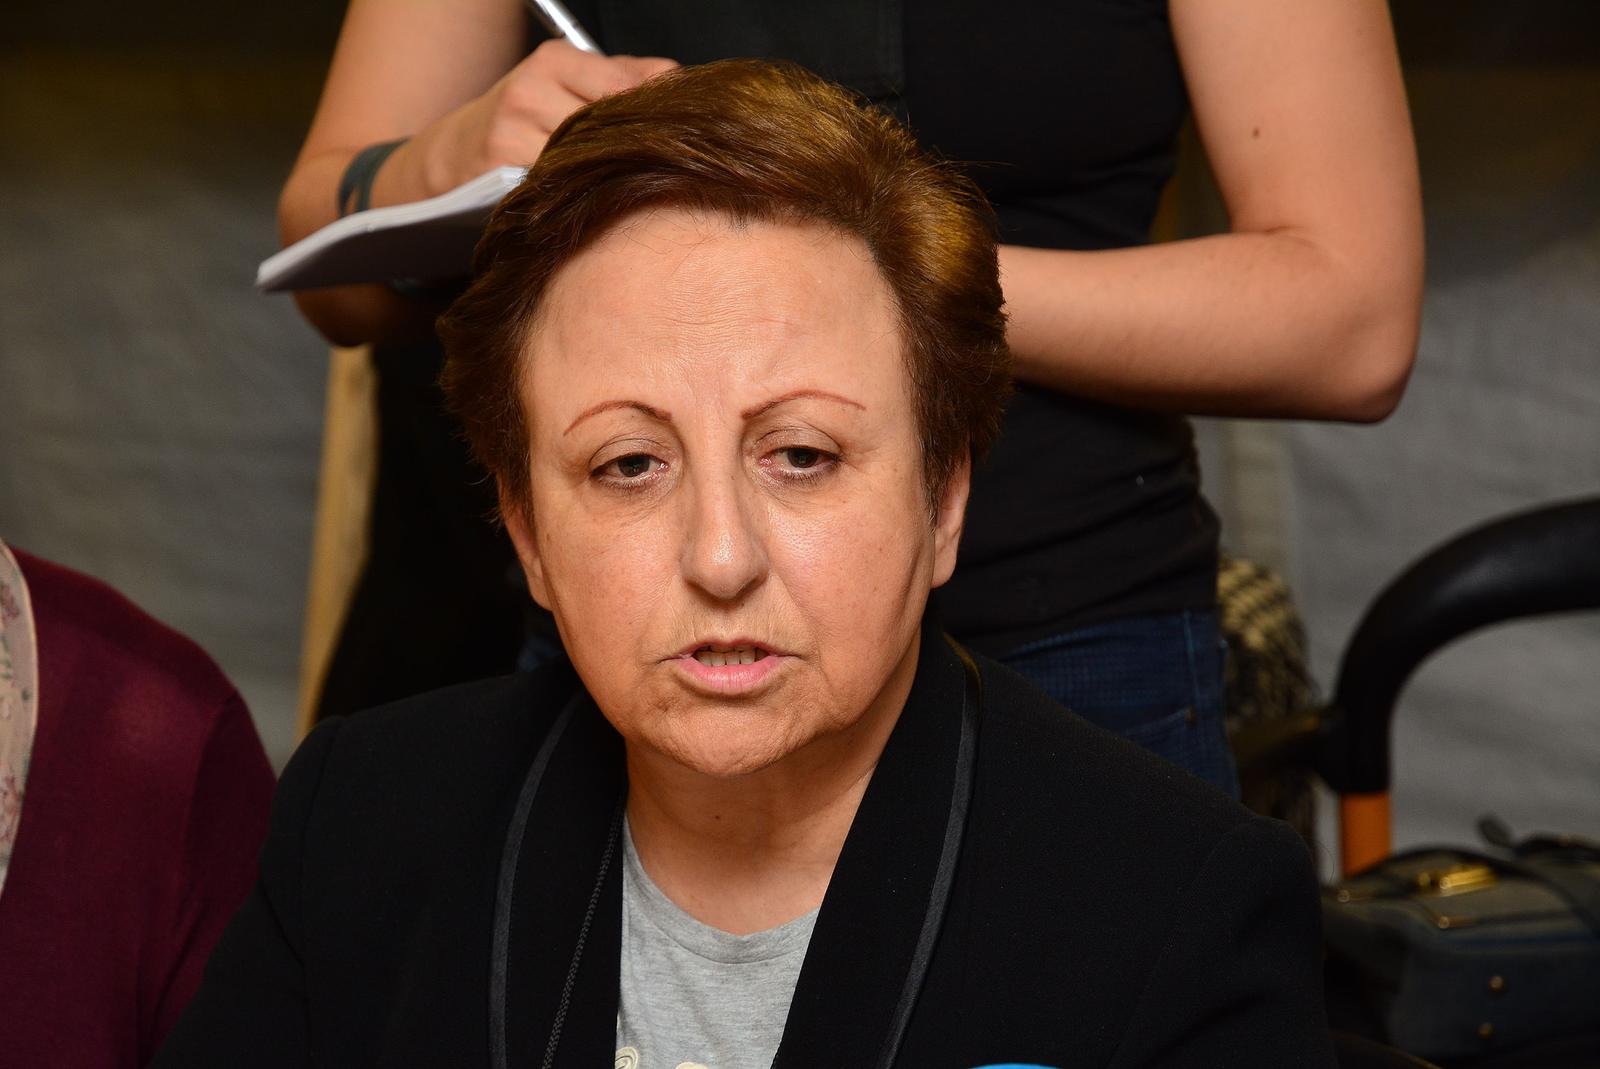 17.11.2015., Slavonski Brod - Prijem u zimskom tranzitnom centru izaslanstva dobitnica Nobelove nagrade za mir. Shirin Ebadi (Iran). rPhoto: Ivica Galovic/ PIXSELL